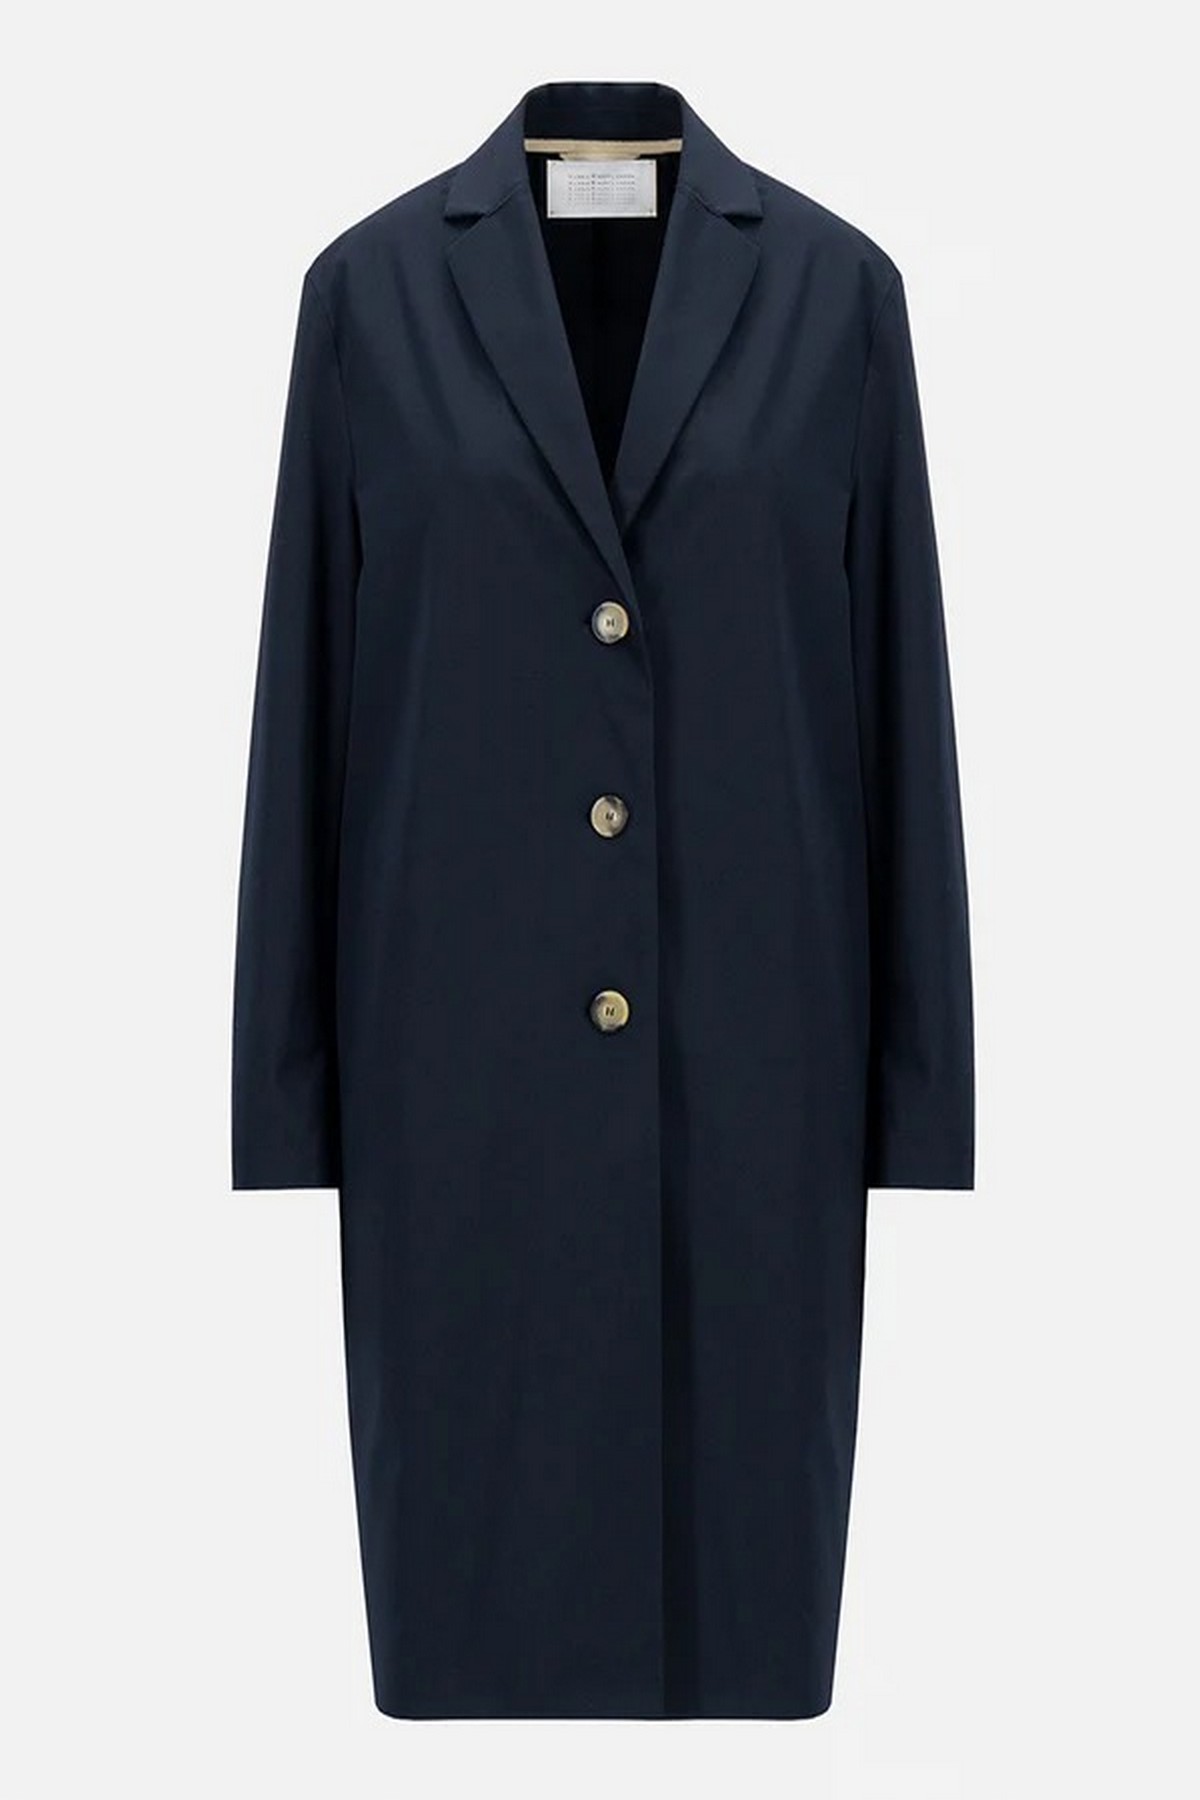 Overcoat in de kleur donkerblauw van het merk Harris Wharf